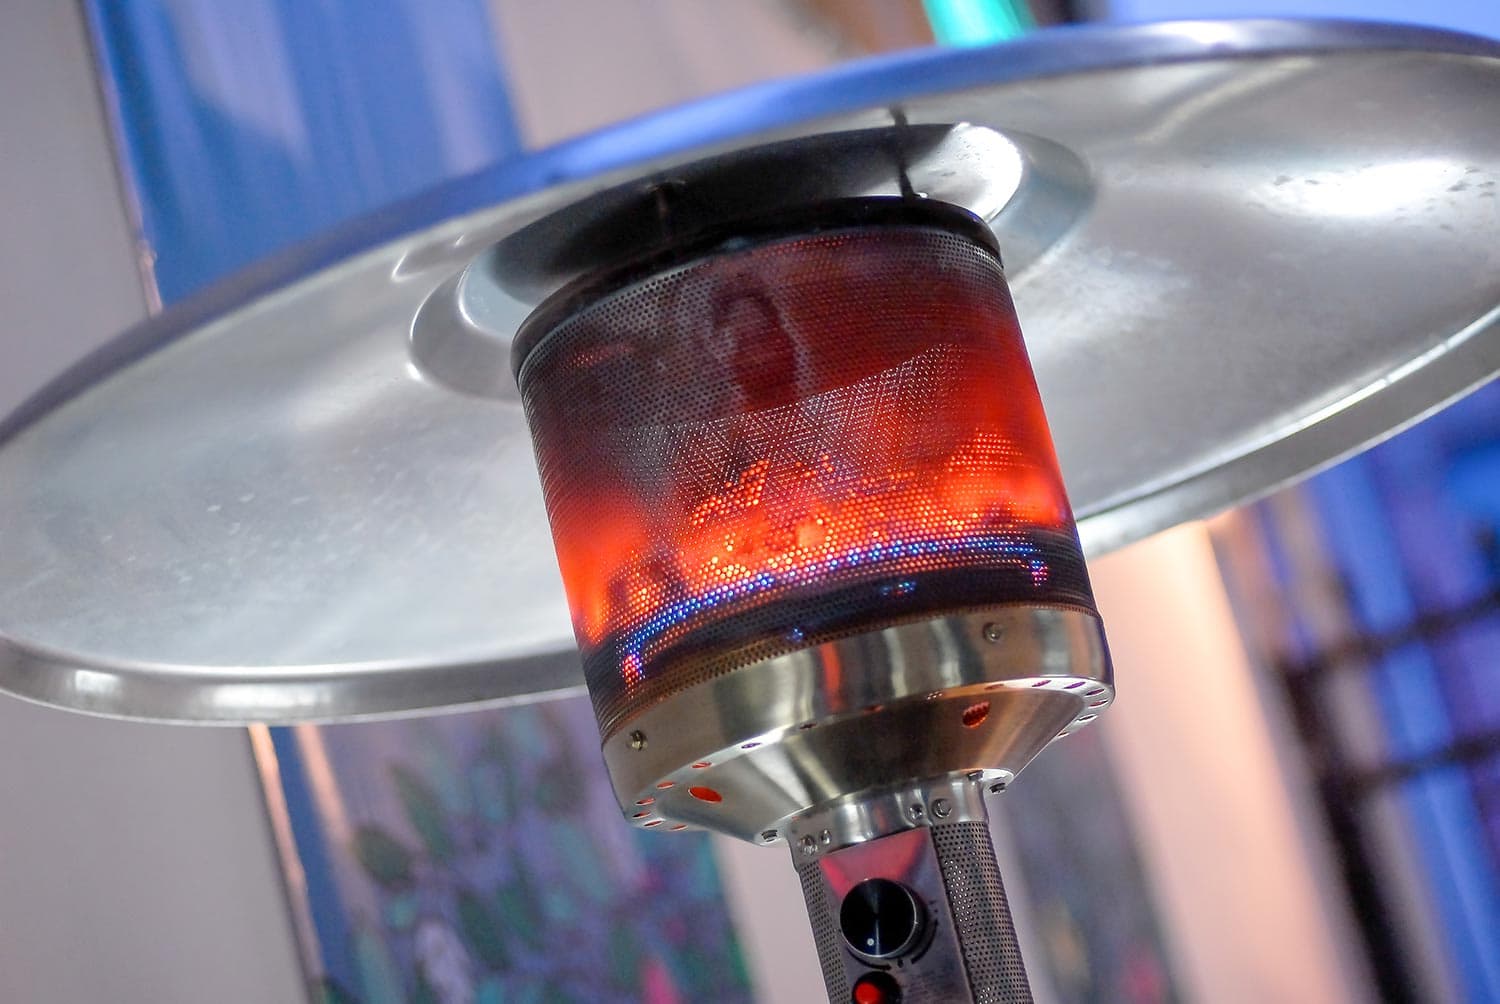 Design stainless steel metal gas burning indoor patio heater